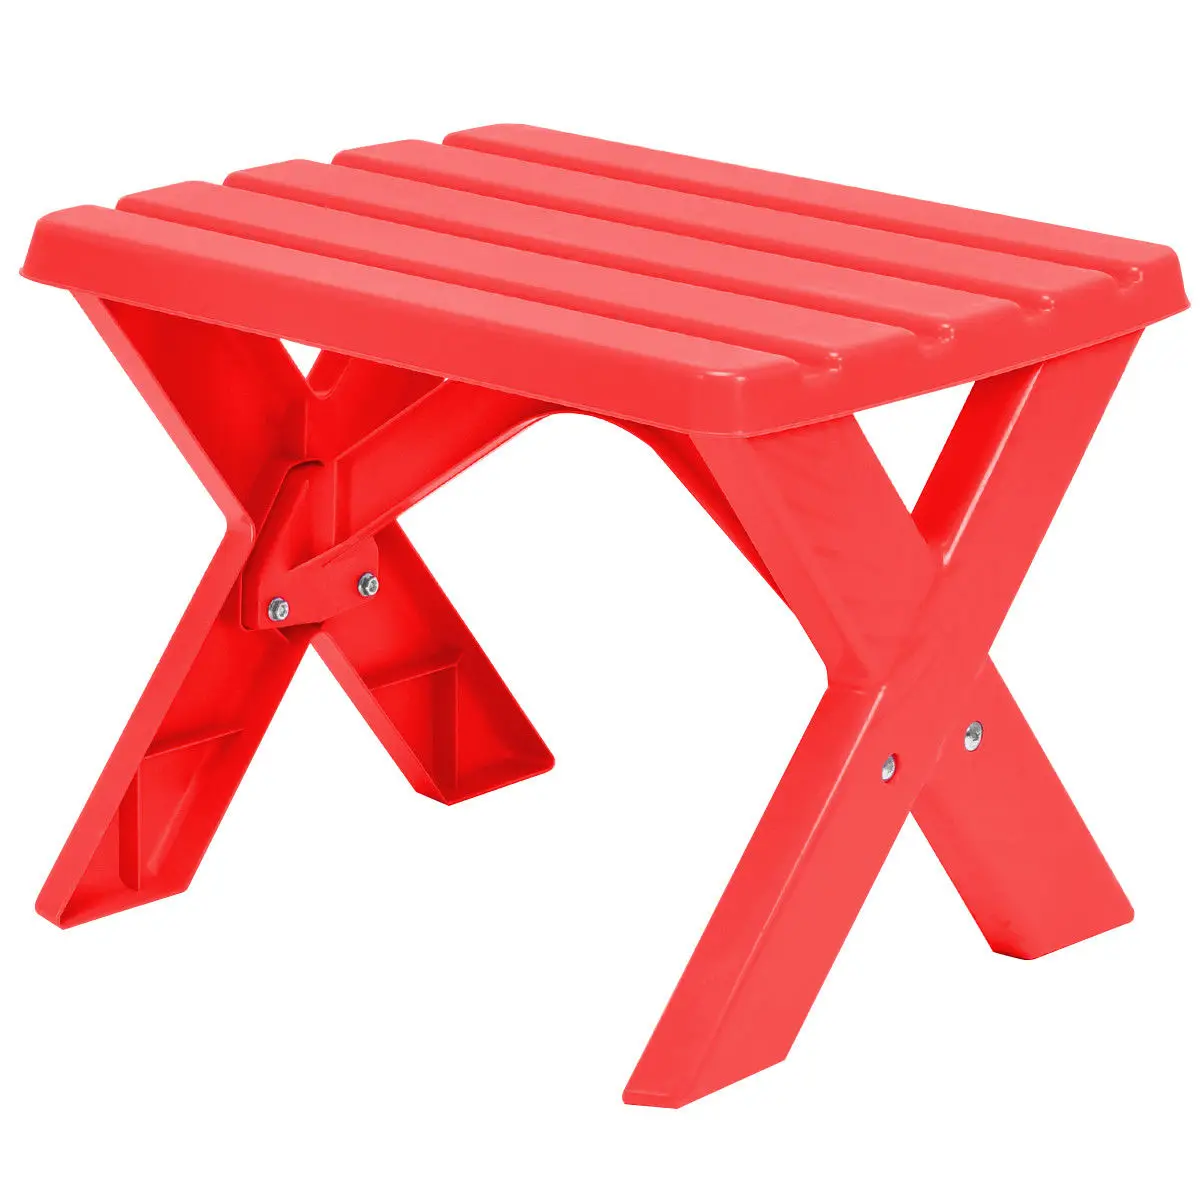 Ensemble de table et chaise en plastique pour enfants, meubles de jeu,  intérieur, extérieur, rouge, 3